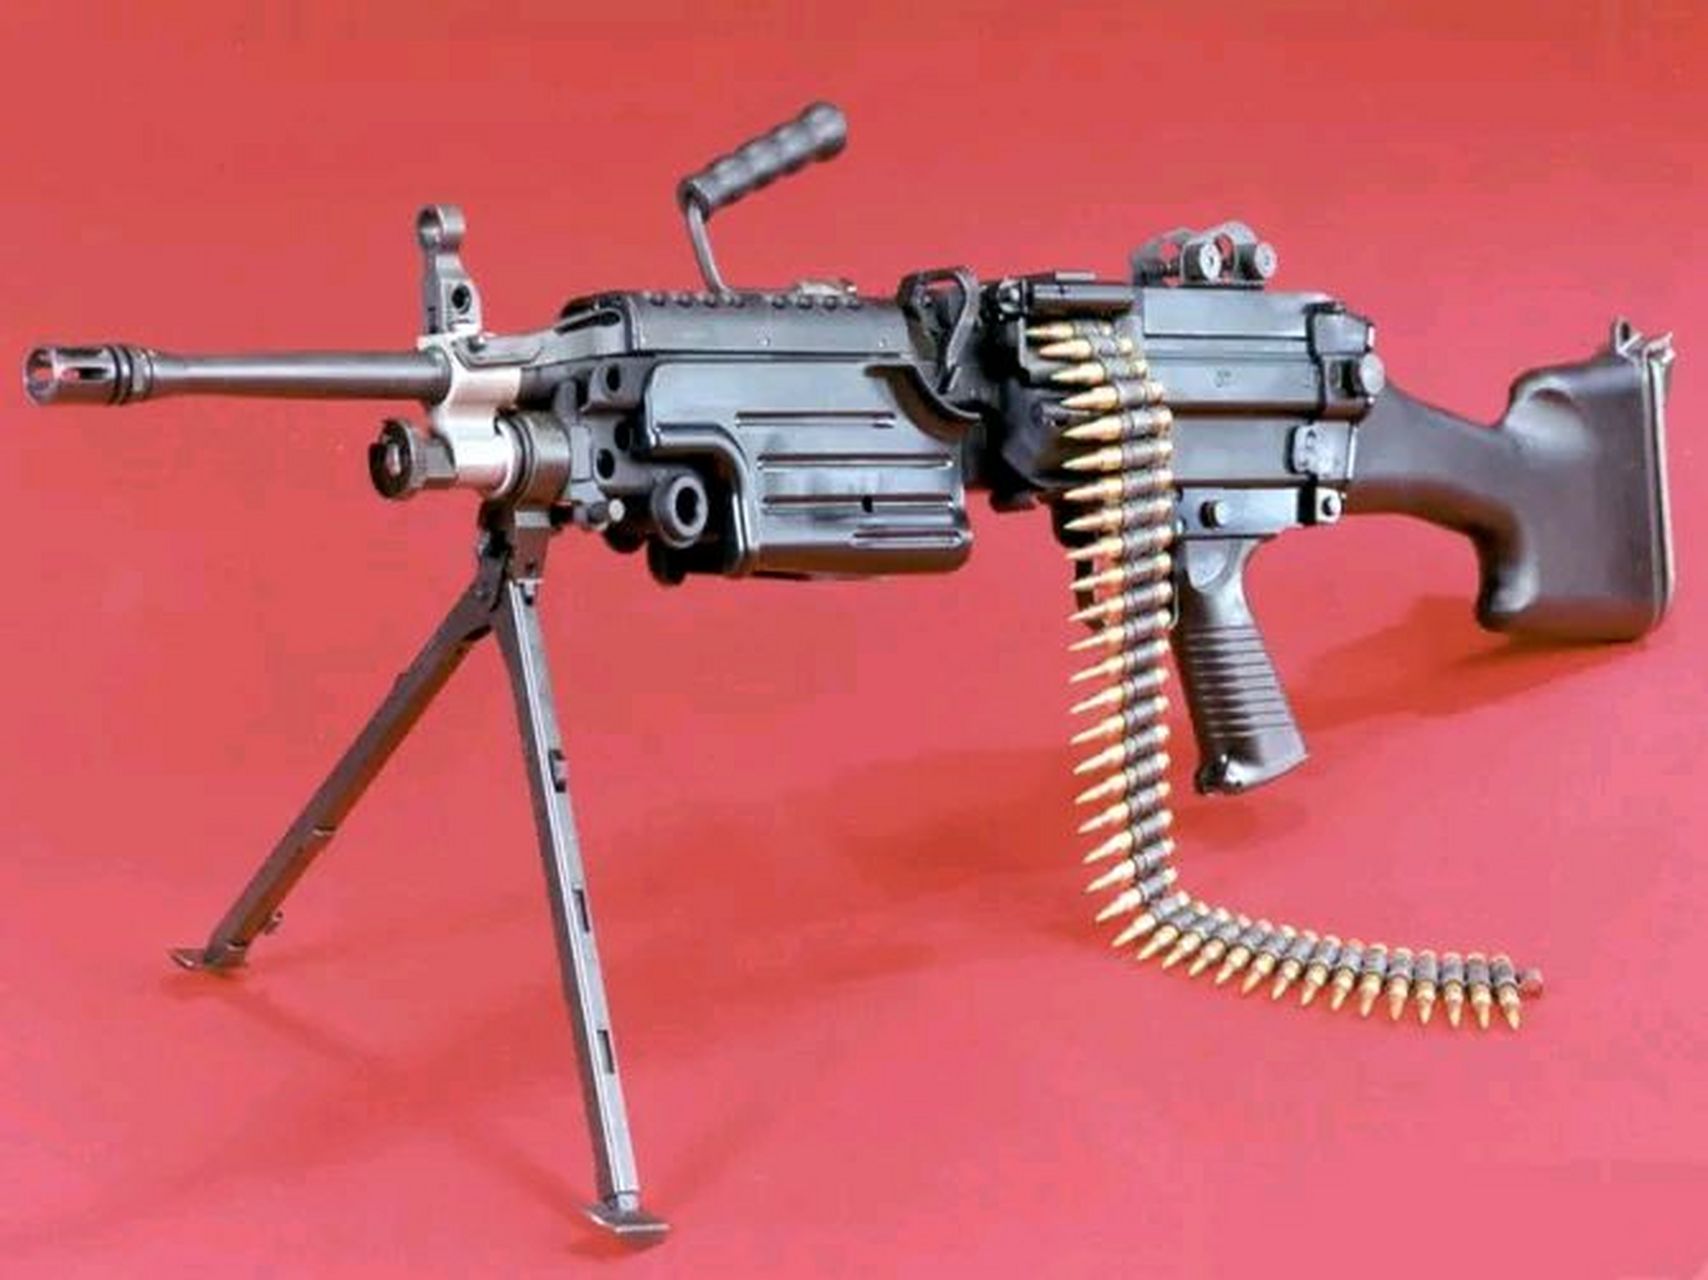 56毫米口径轻机枪是由比利时fn公司,也就是赫尔斯塔国营工厂设计的